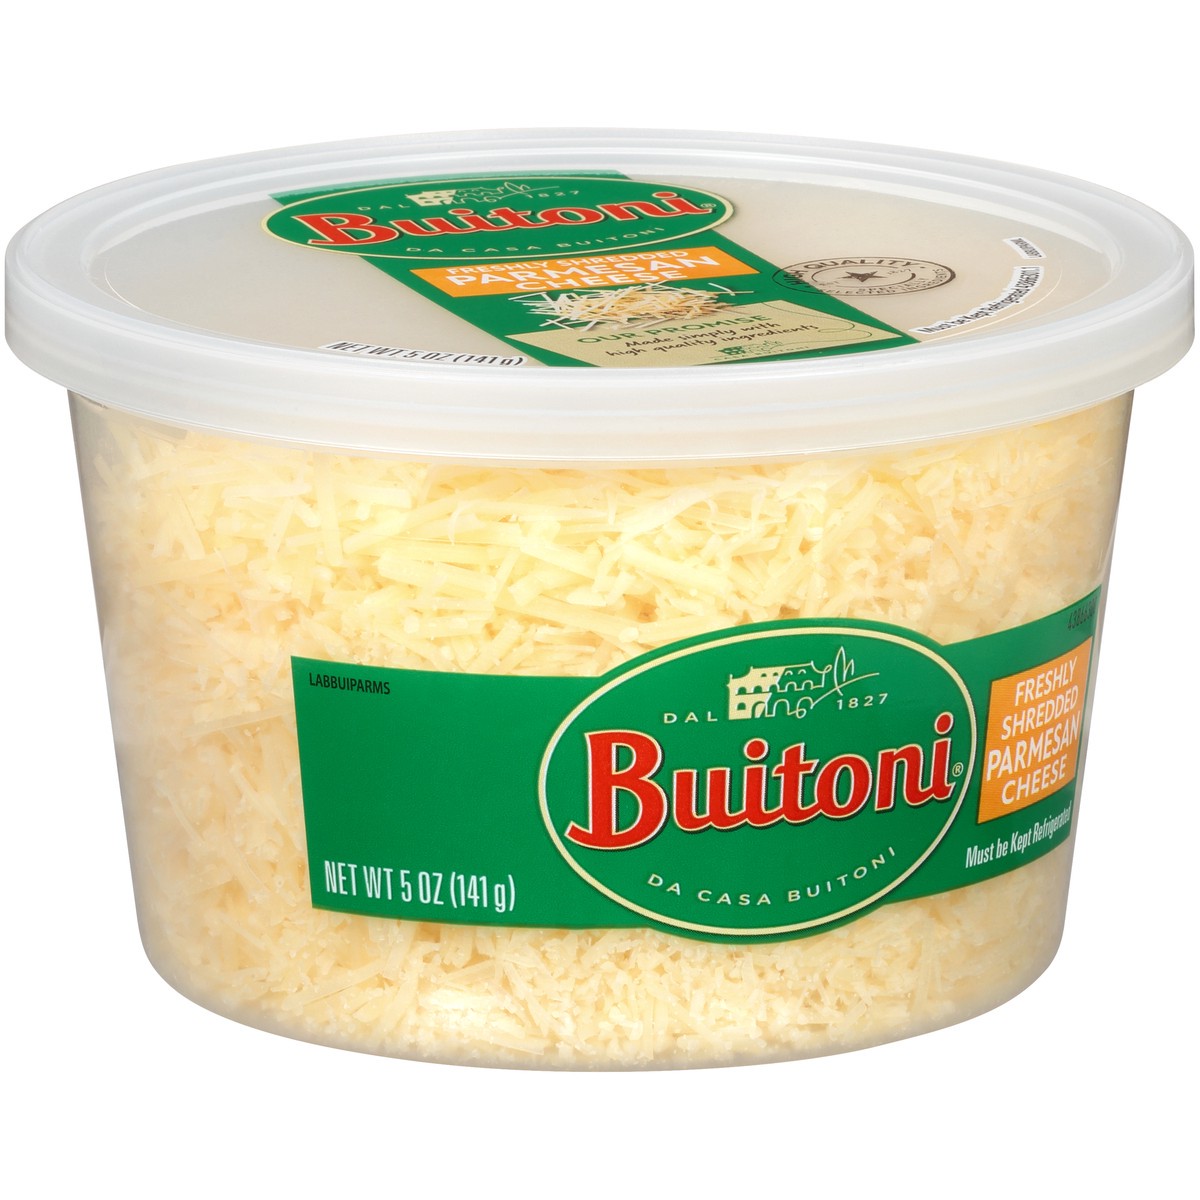 slide 5 of 8, Buitoni Freshly Shredded Parmesan Cheese, 5 oz Tub, 5 oz